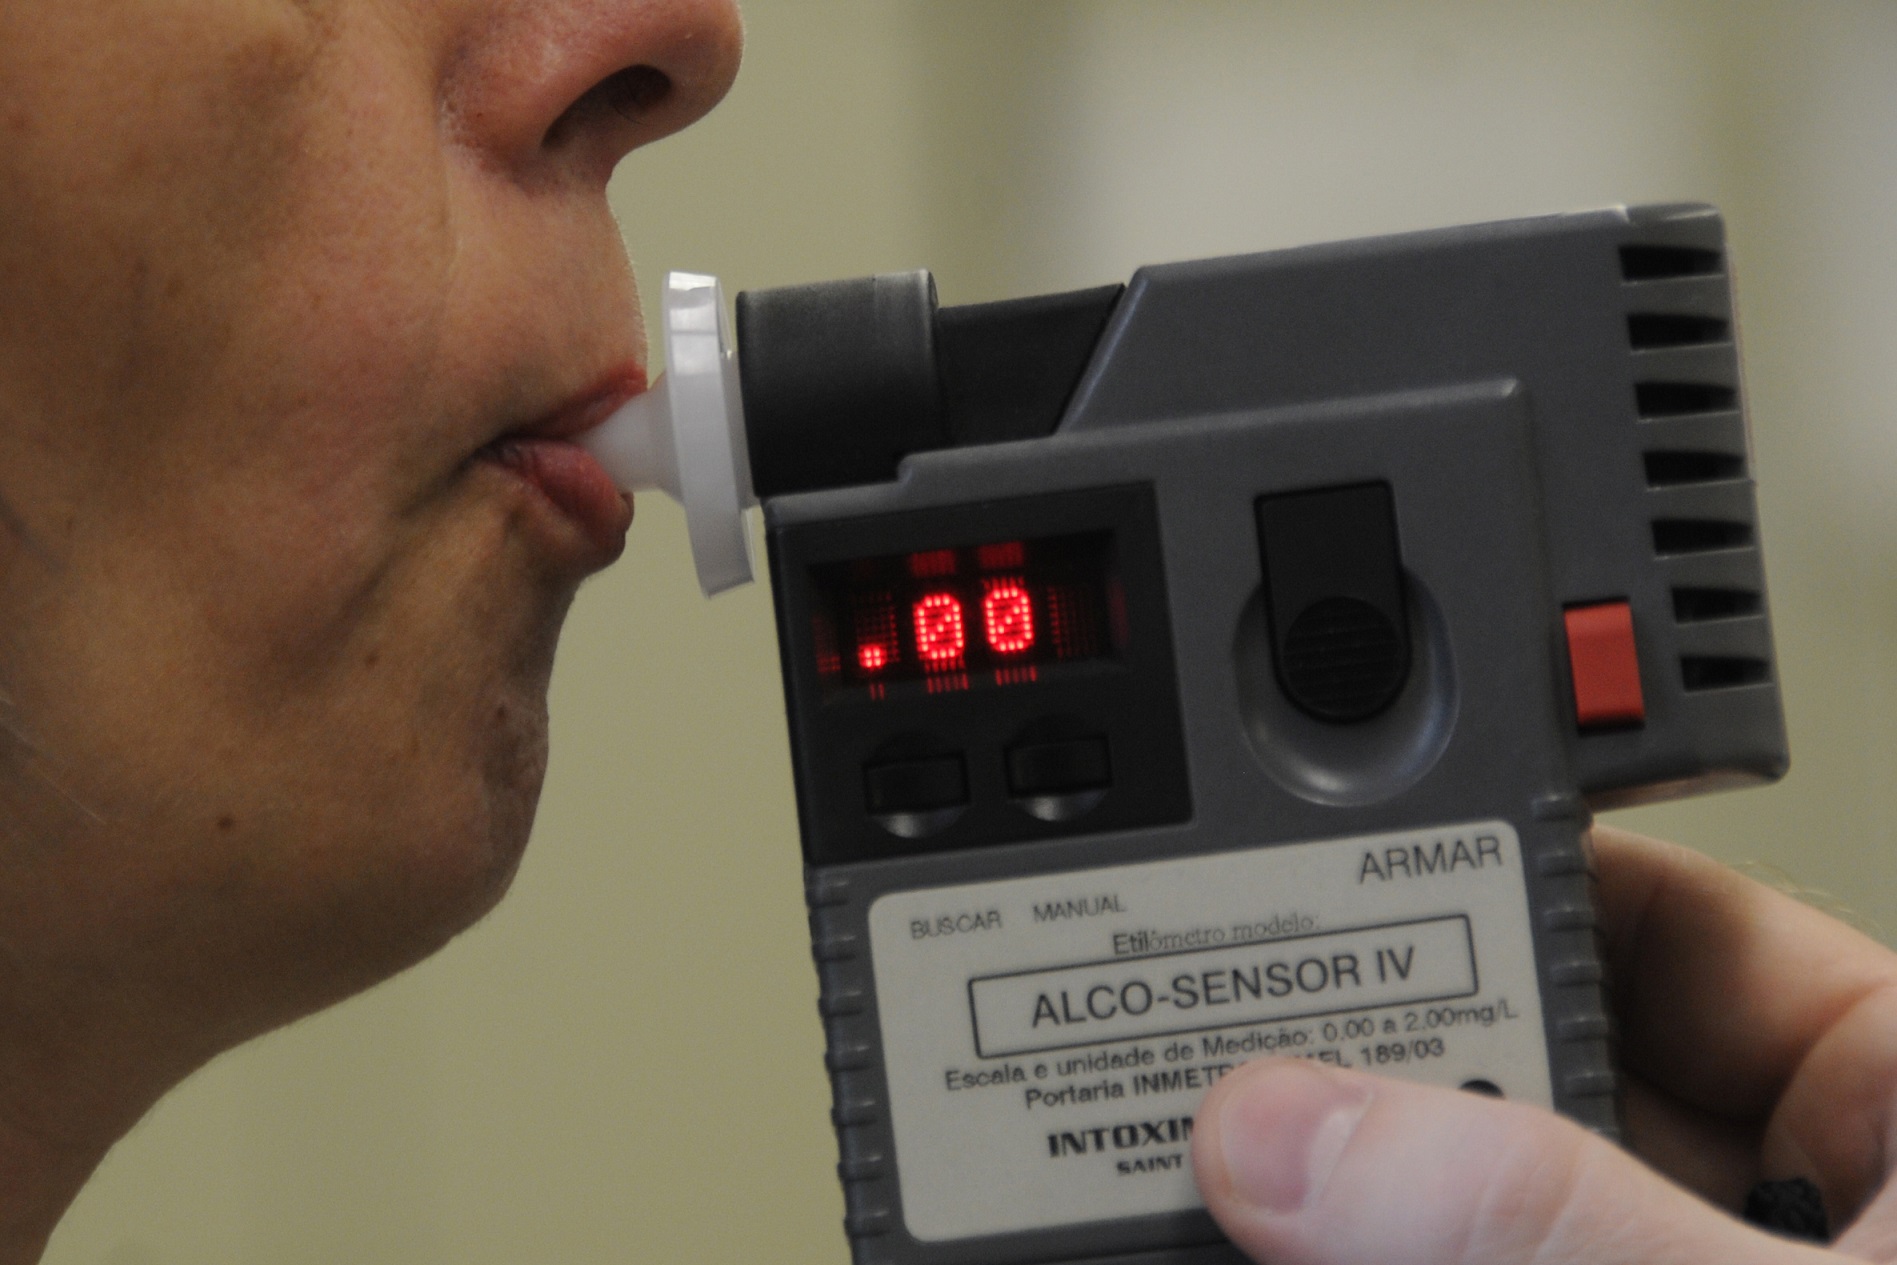 Etilômetro testado ao vivo em repórter detecta álcool em ambiente